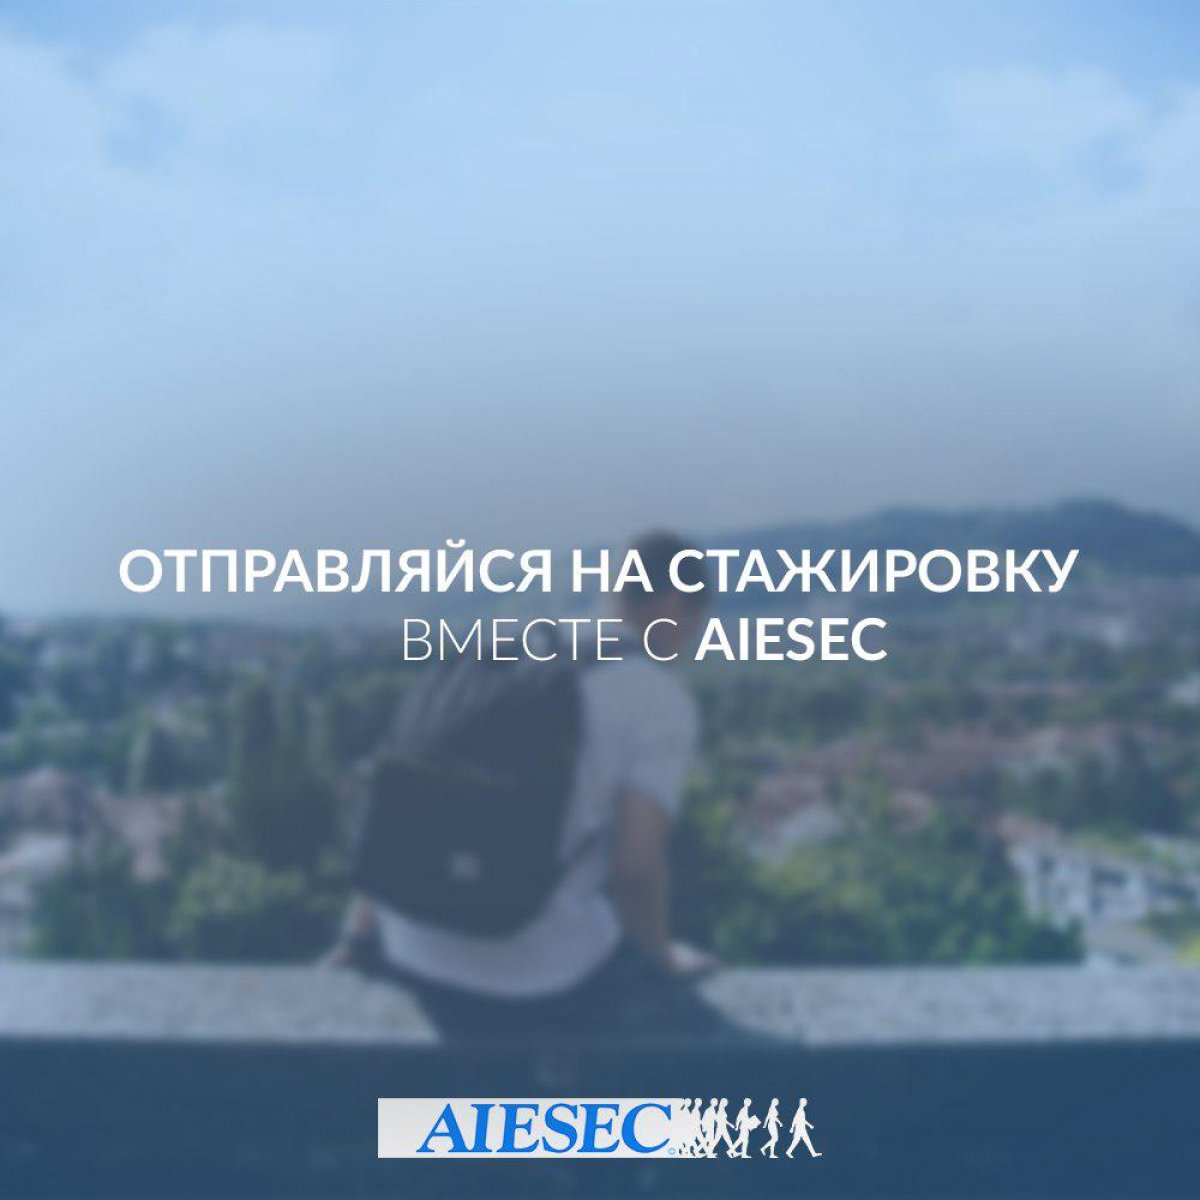 Отправься на стажировку этим летом вместе с AIESEC!